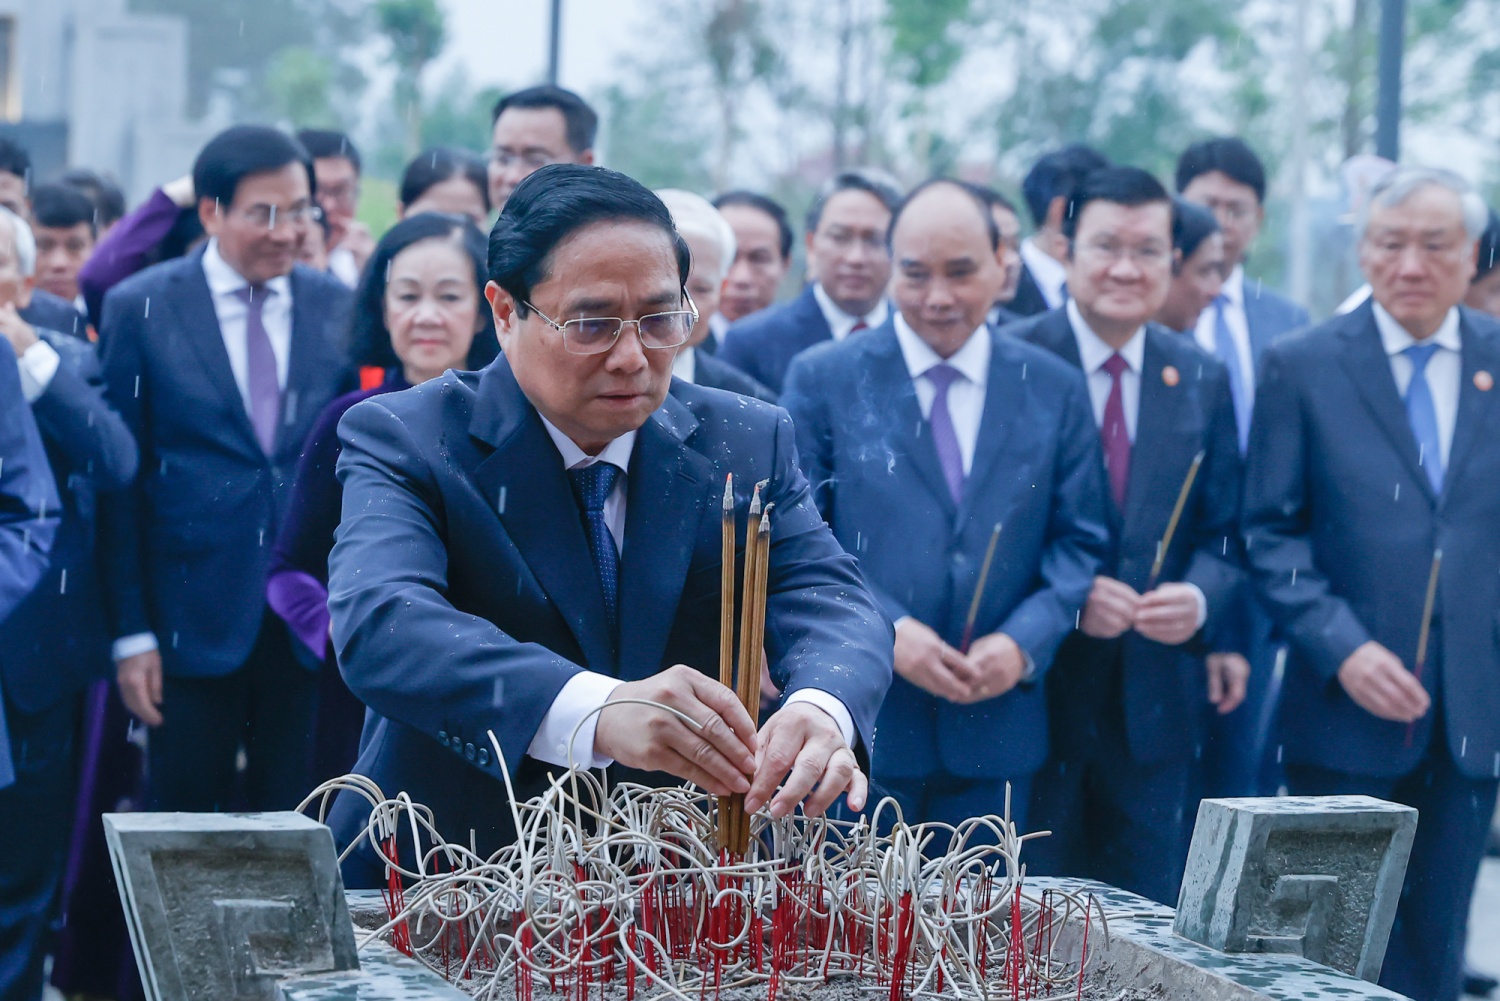 Thủ tướng Phạm Minh Chính cùng các đồng chí lãnh đạo, nguyên lãnh đạo Đảng, Nhà nước dâng hương tại Đền thờ Liệt sĩ tại chiến trường Điện Biên Phủ - Ảnh: VGP/Nhật Bắc